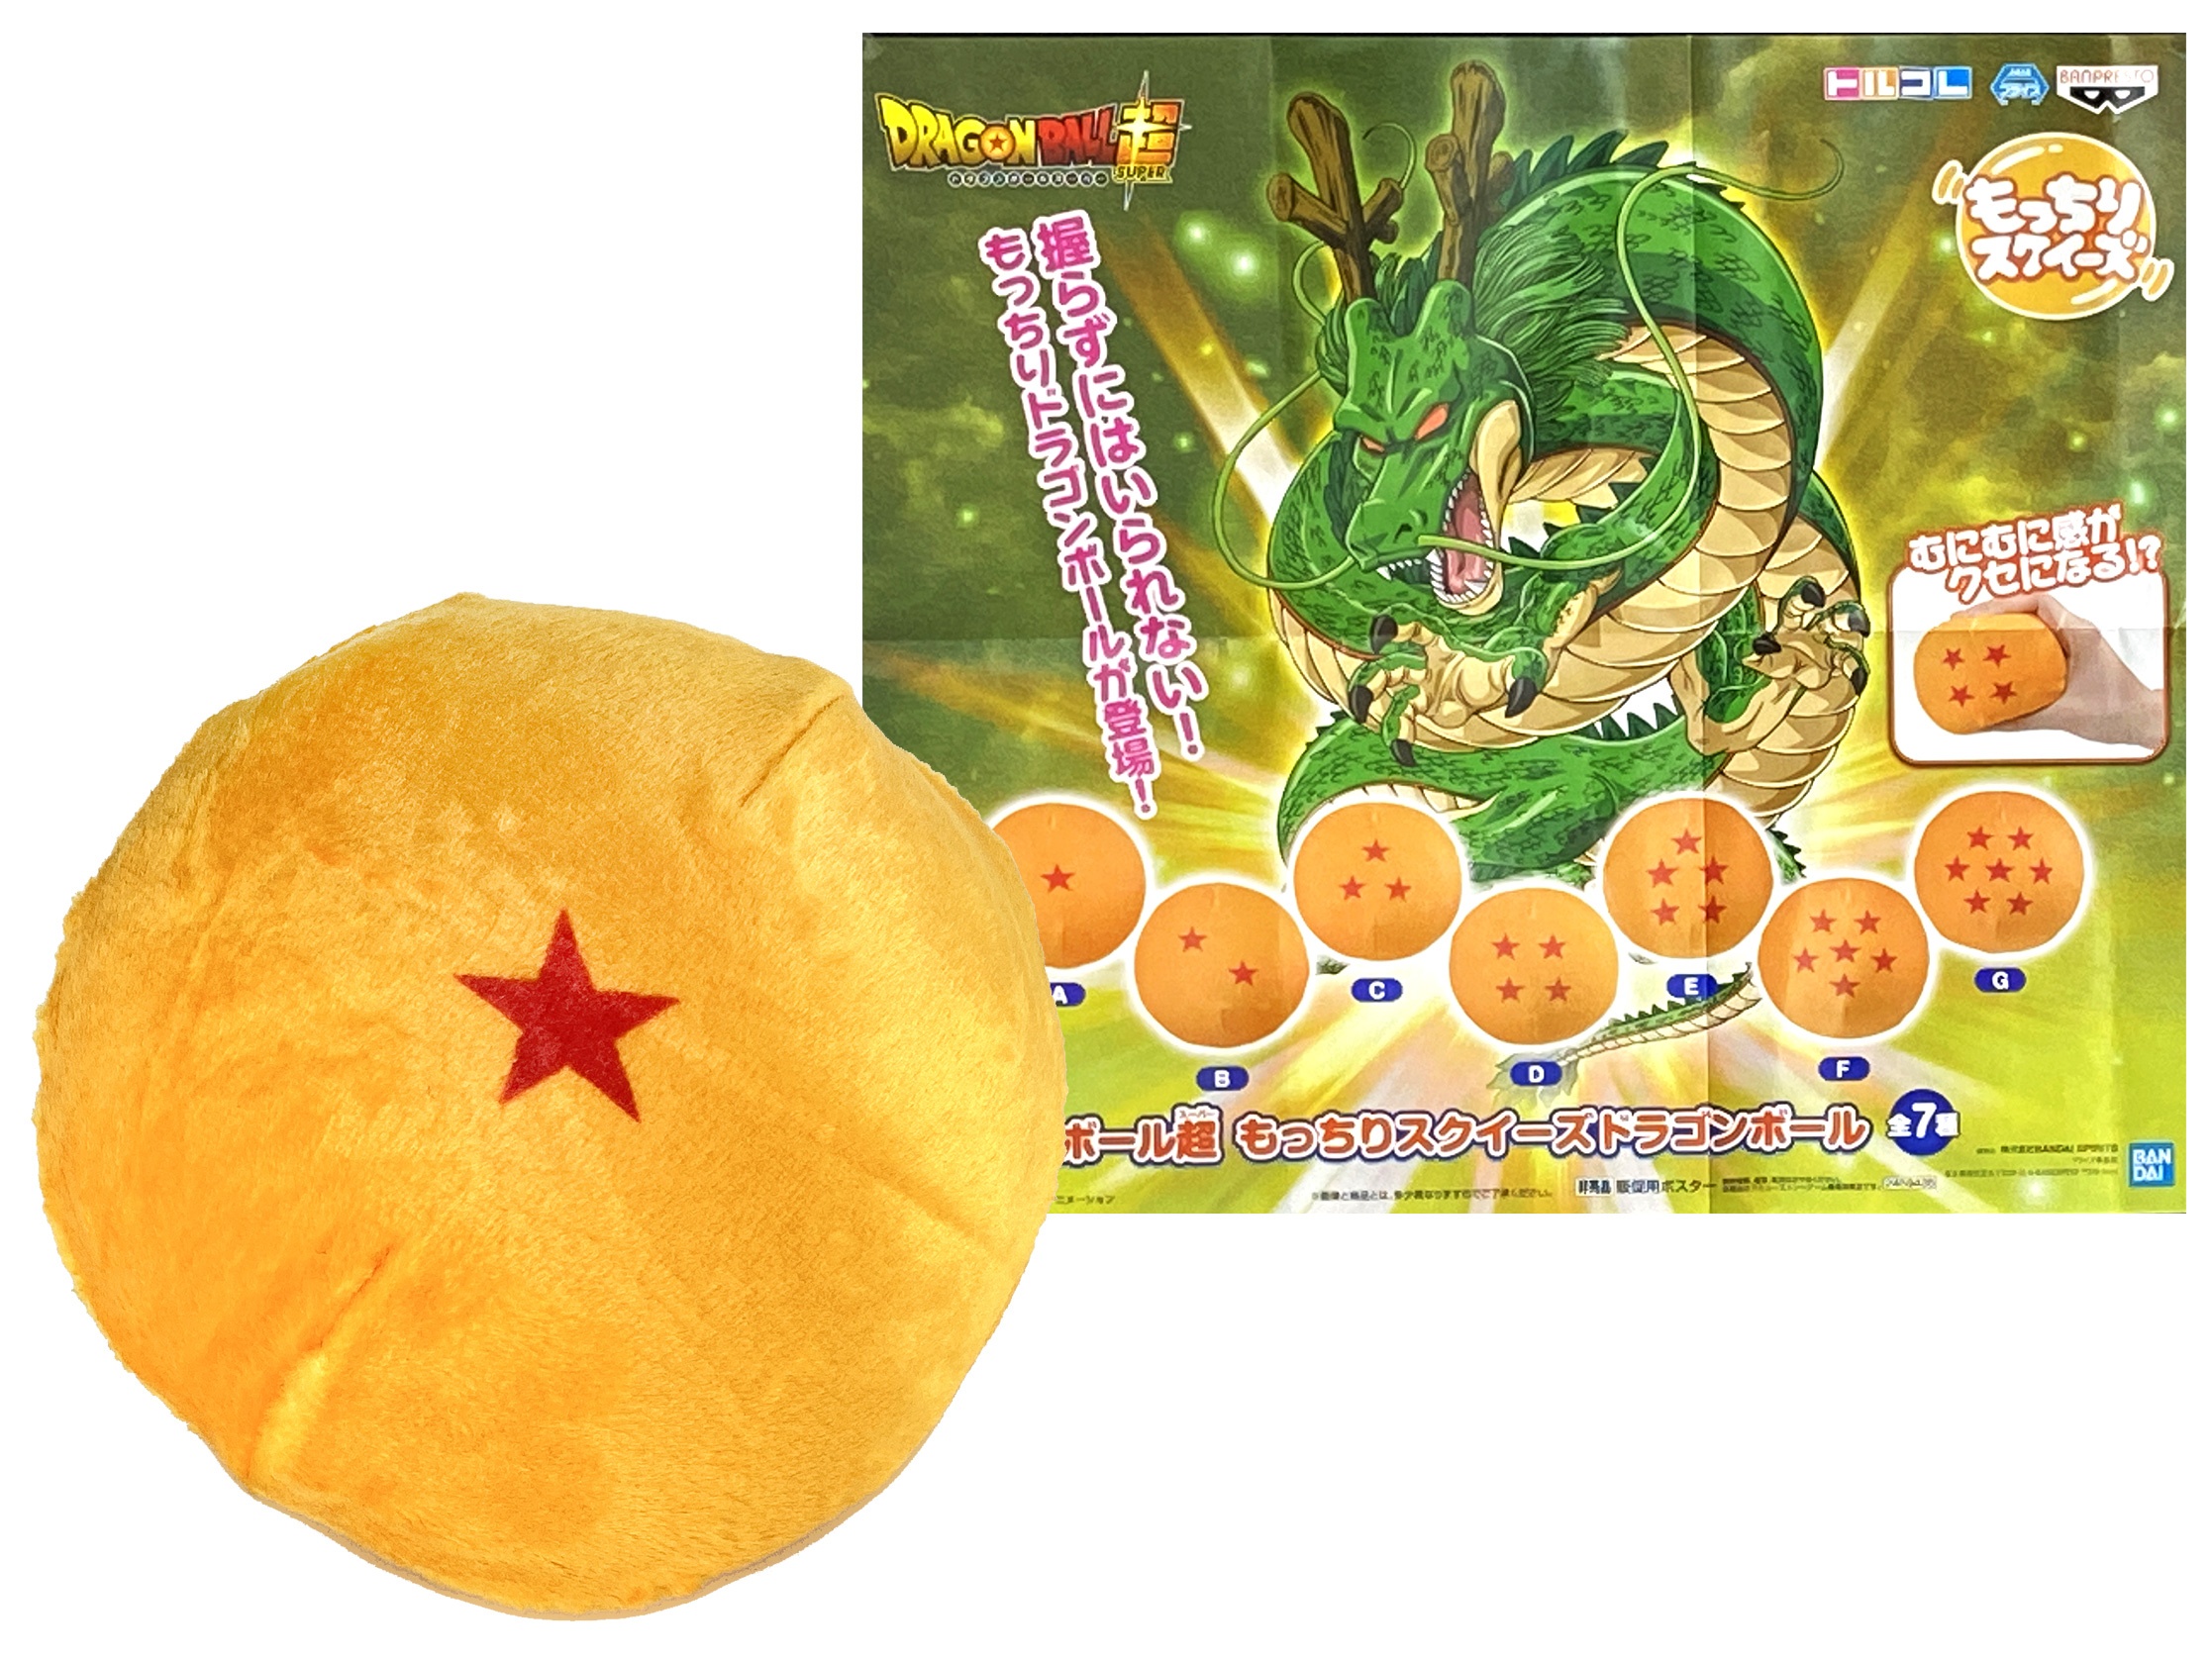 [Pre-order] Banpresto "Dragon Ball Super" Soft Squeeze Dragon Ball (Random 1pc)